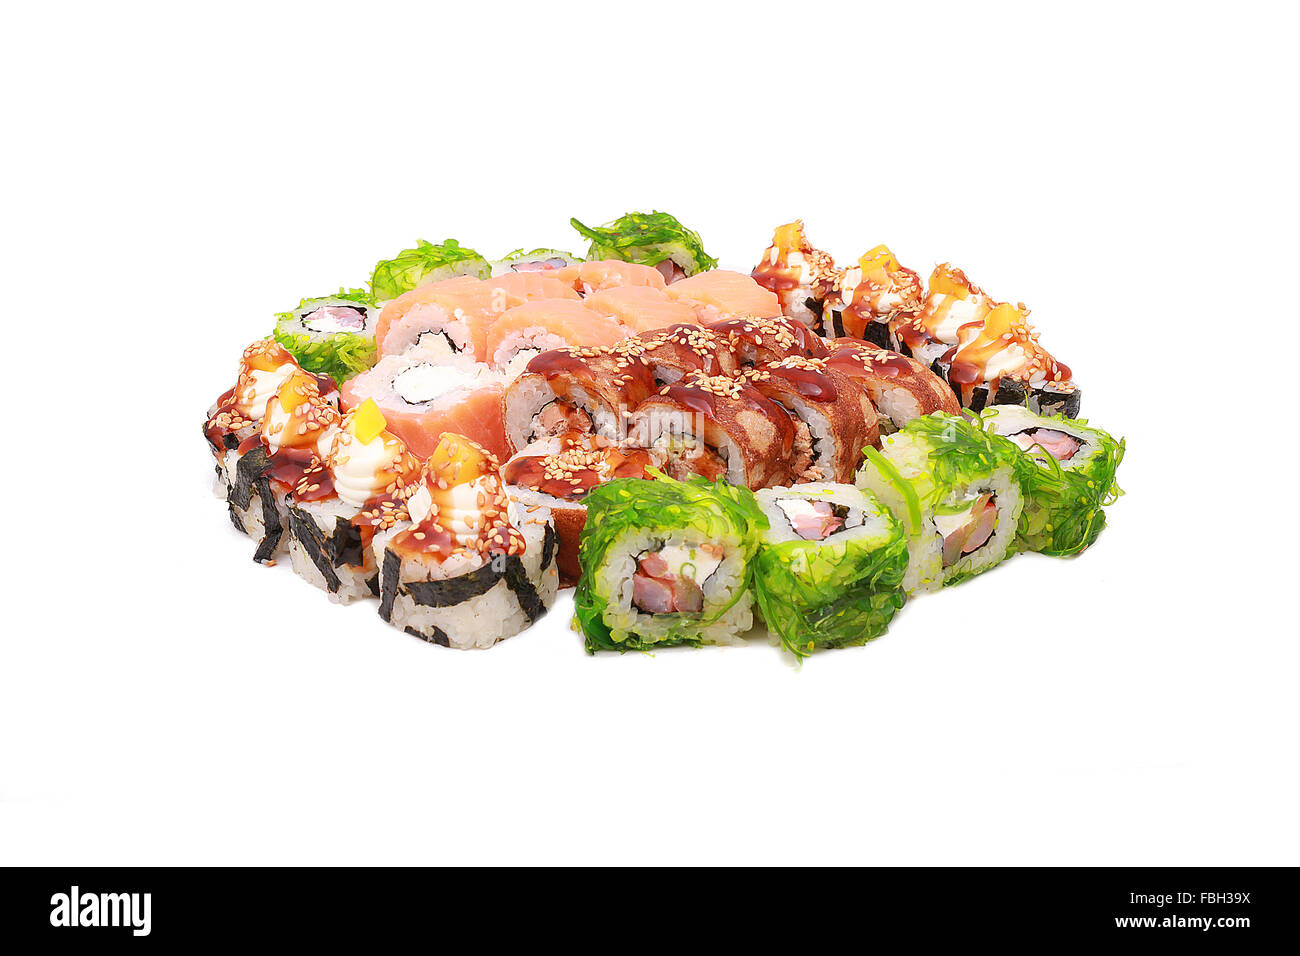 Sushi on the white background Stock Photo